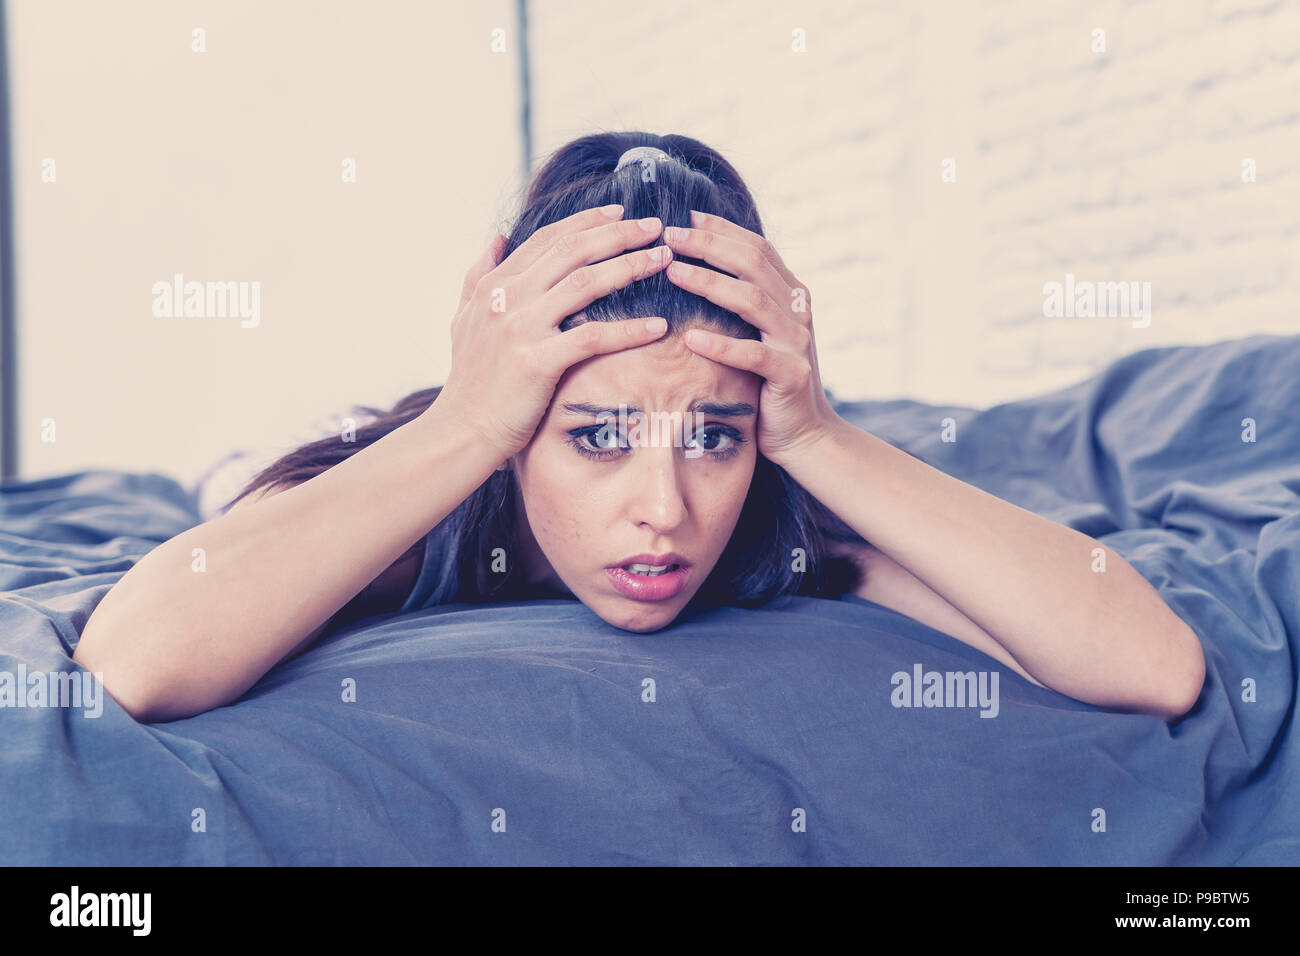 Junge schöne Hispanic traurige Frau portrait ernst und besorgt, besorgt und nachdenklichen Gesichtsausdruck Gefühl auf dem Bett gedrückt mit Weiß Stockfoto